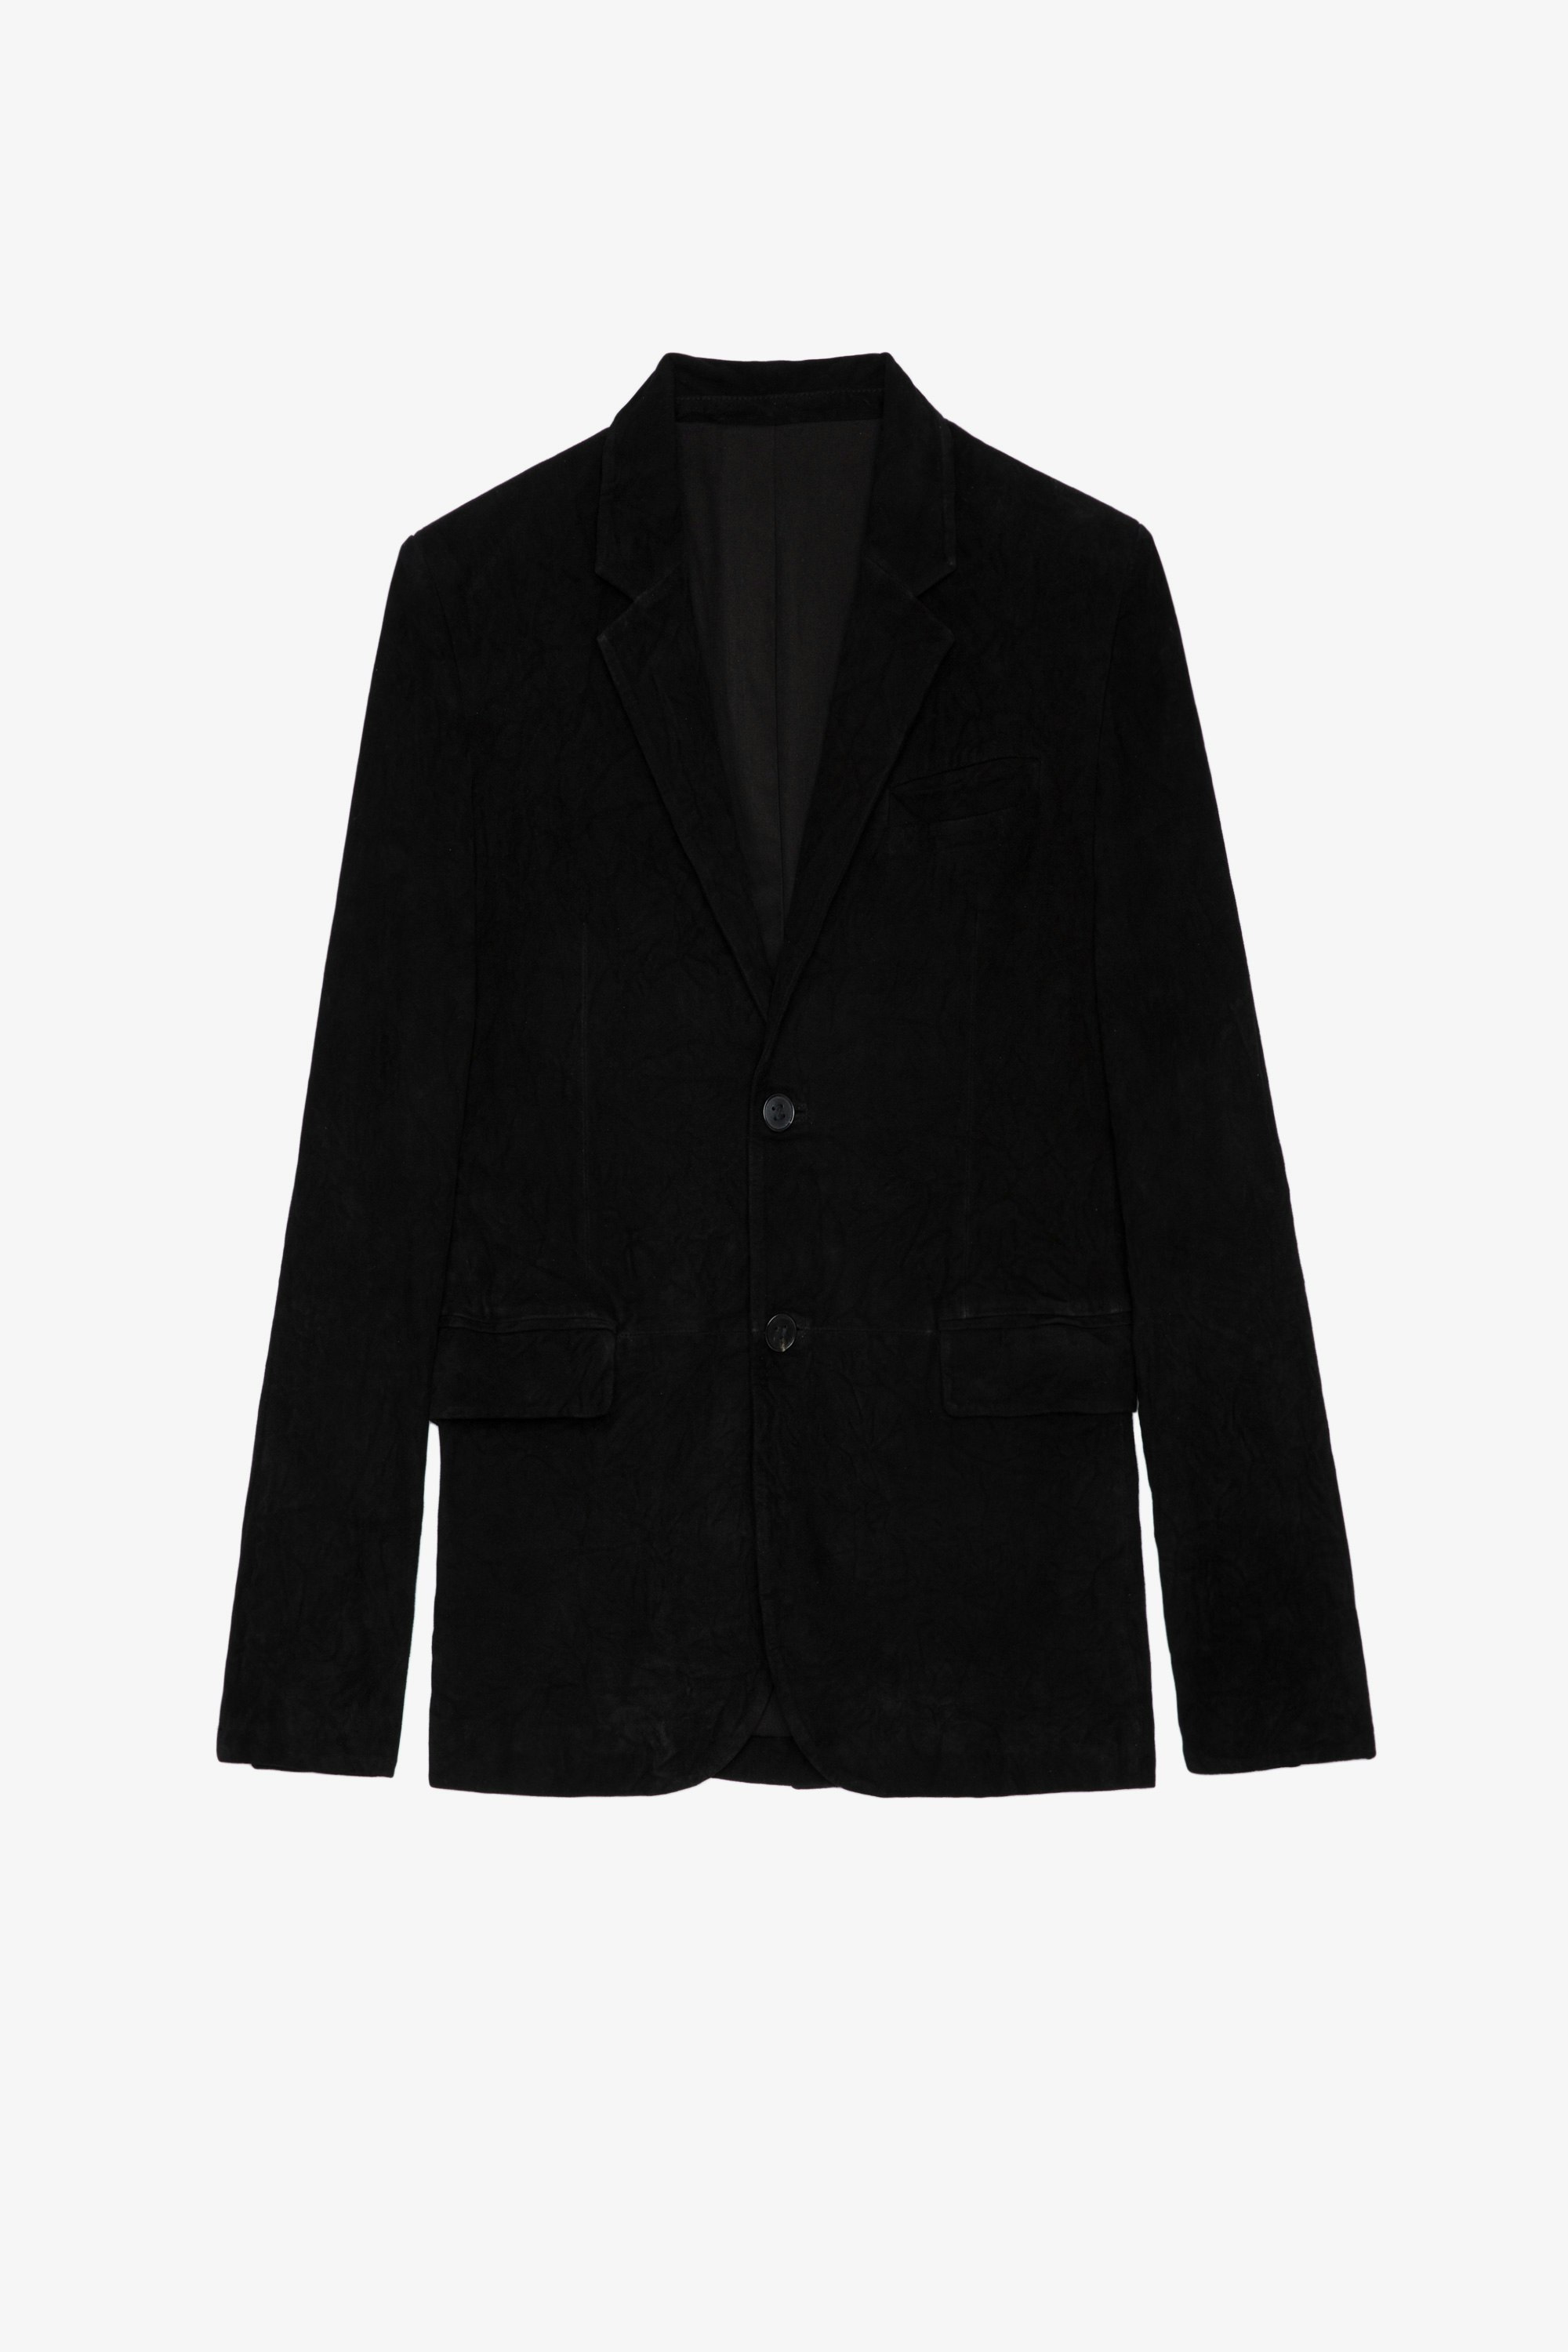 Valfried Crinkled Suede ジャケット Men’s black crinkled leather blazer